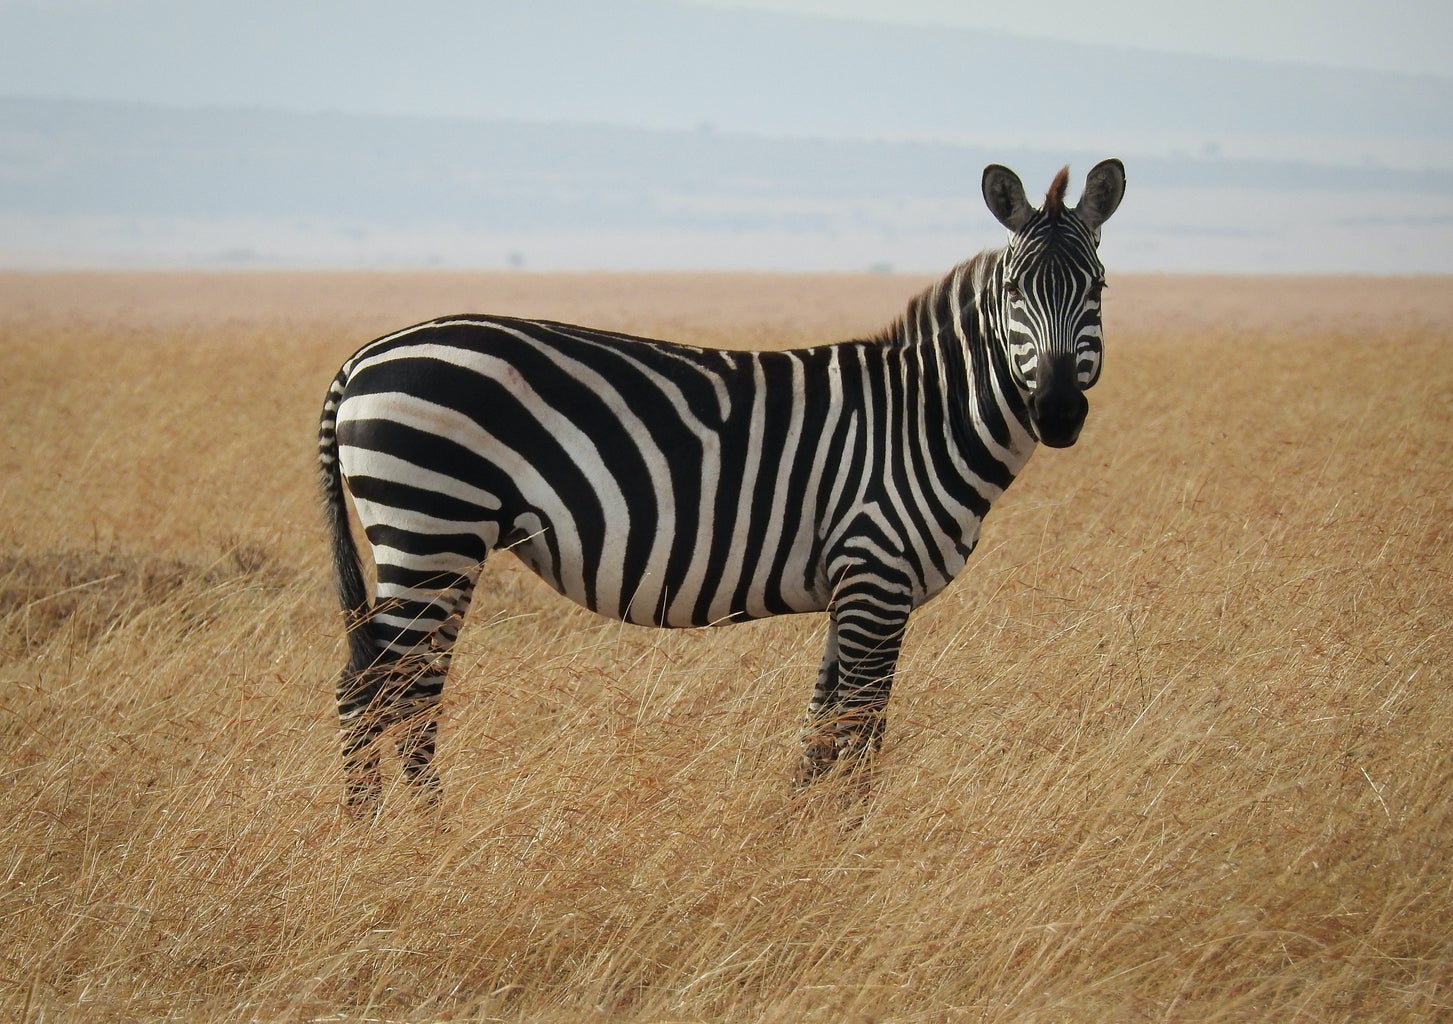 A zebra in a field